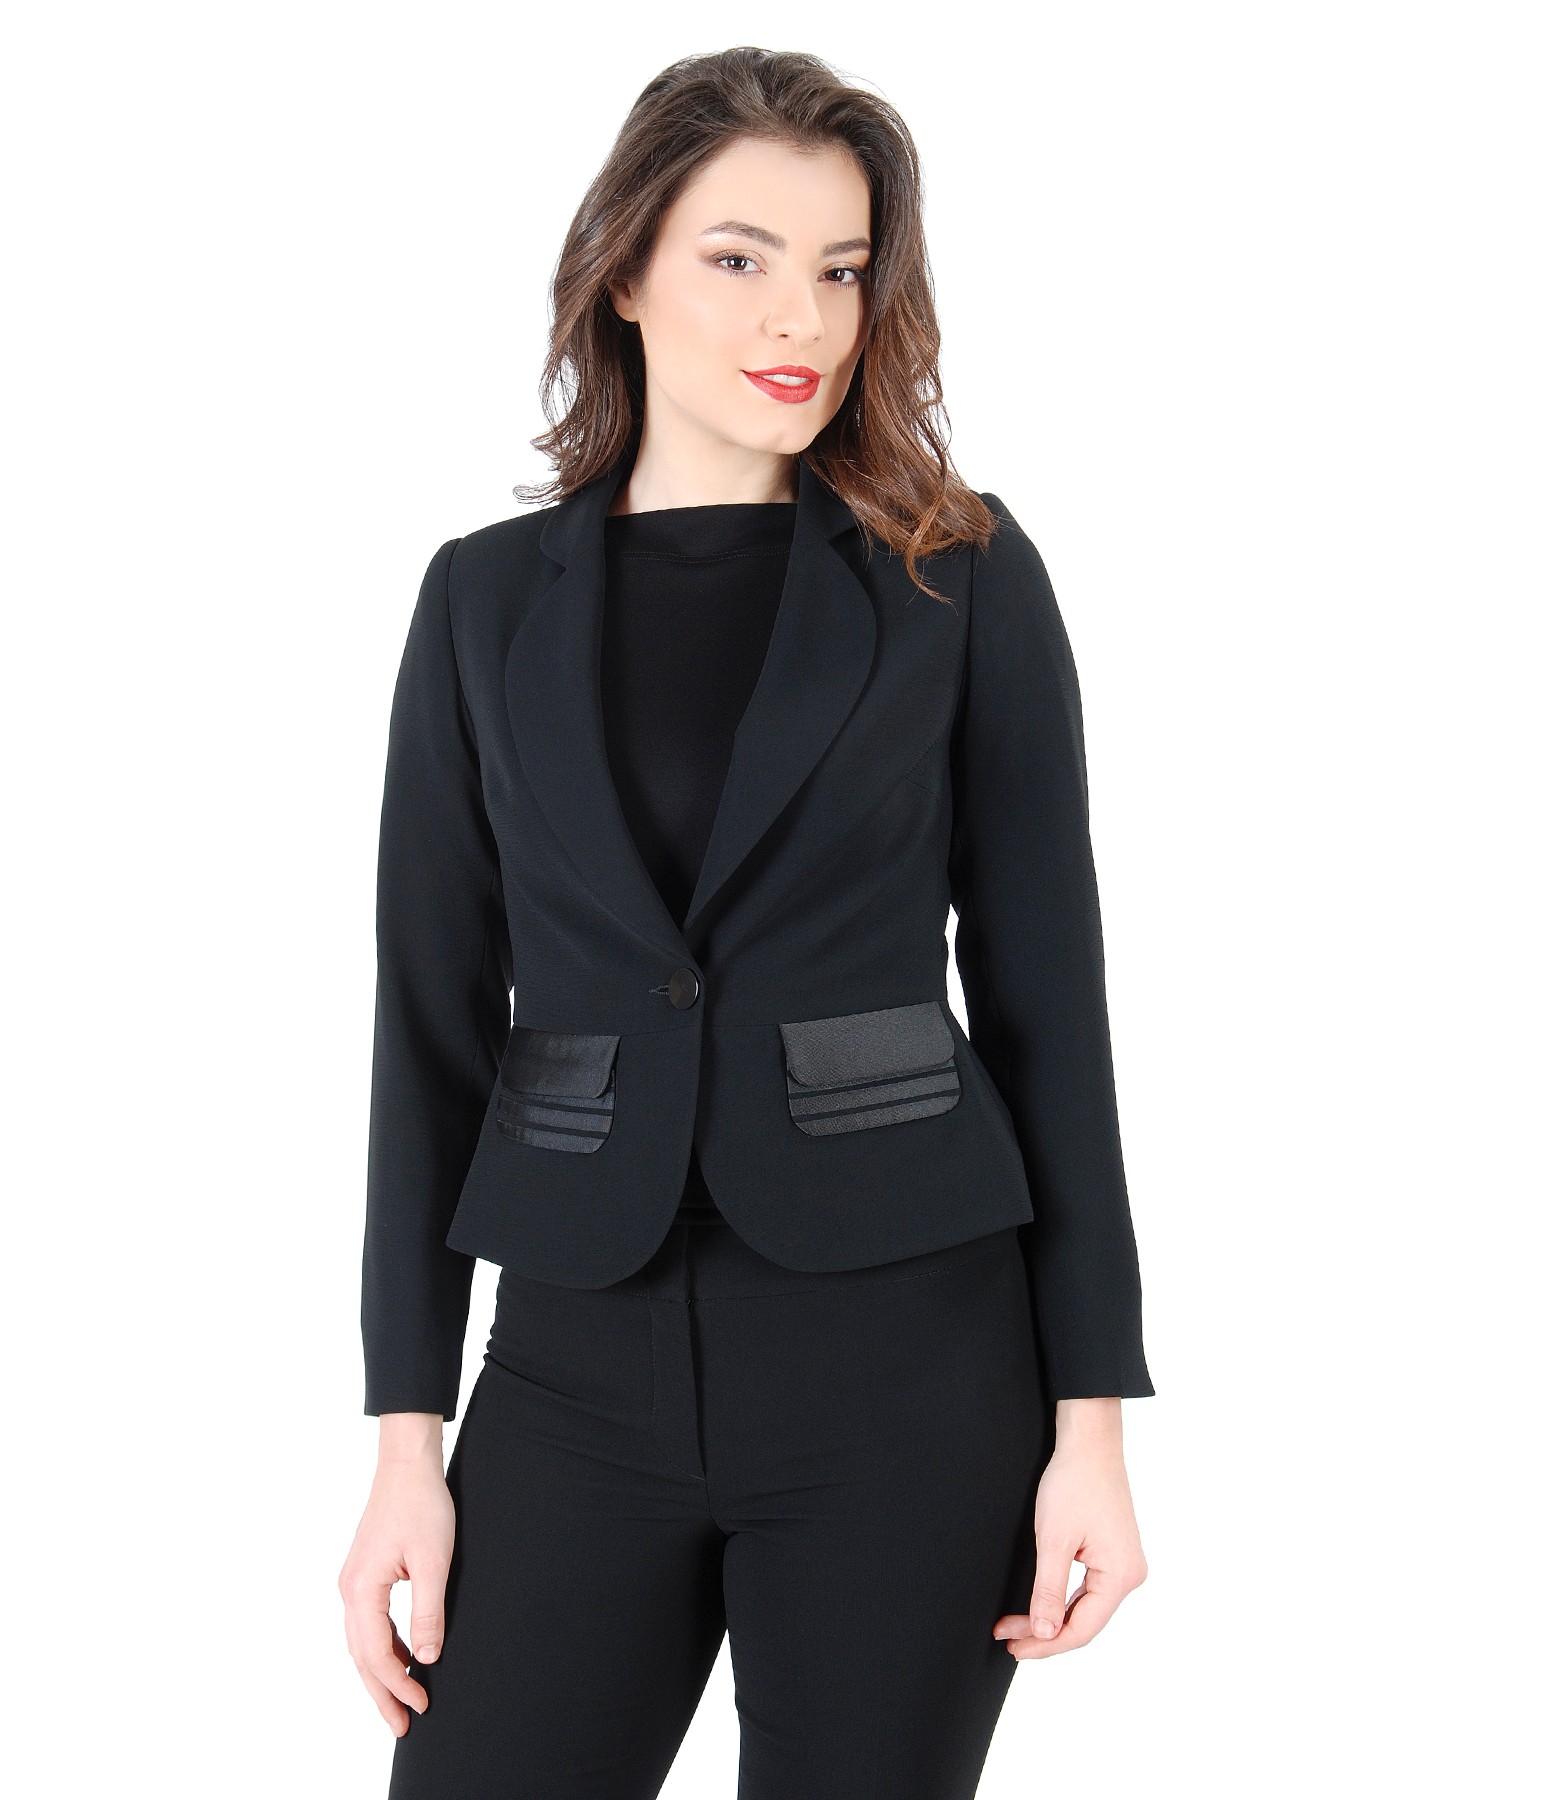 Office jacket with pockets black - YOKKO